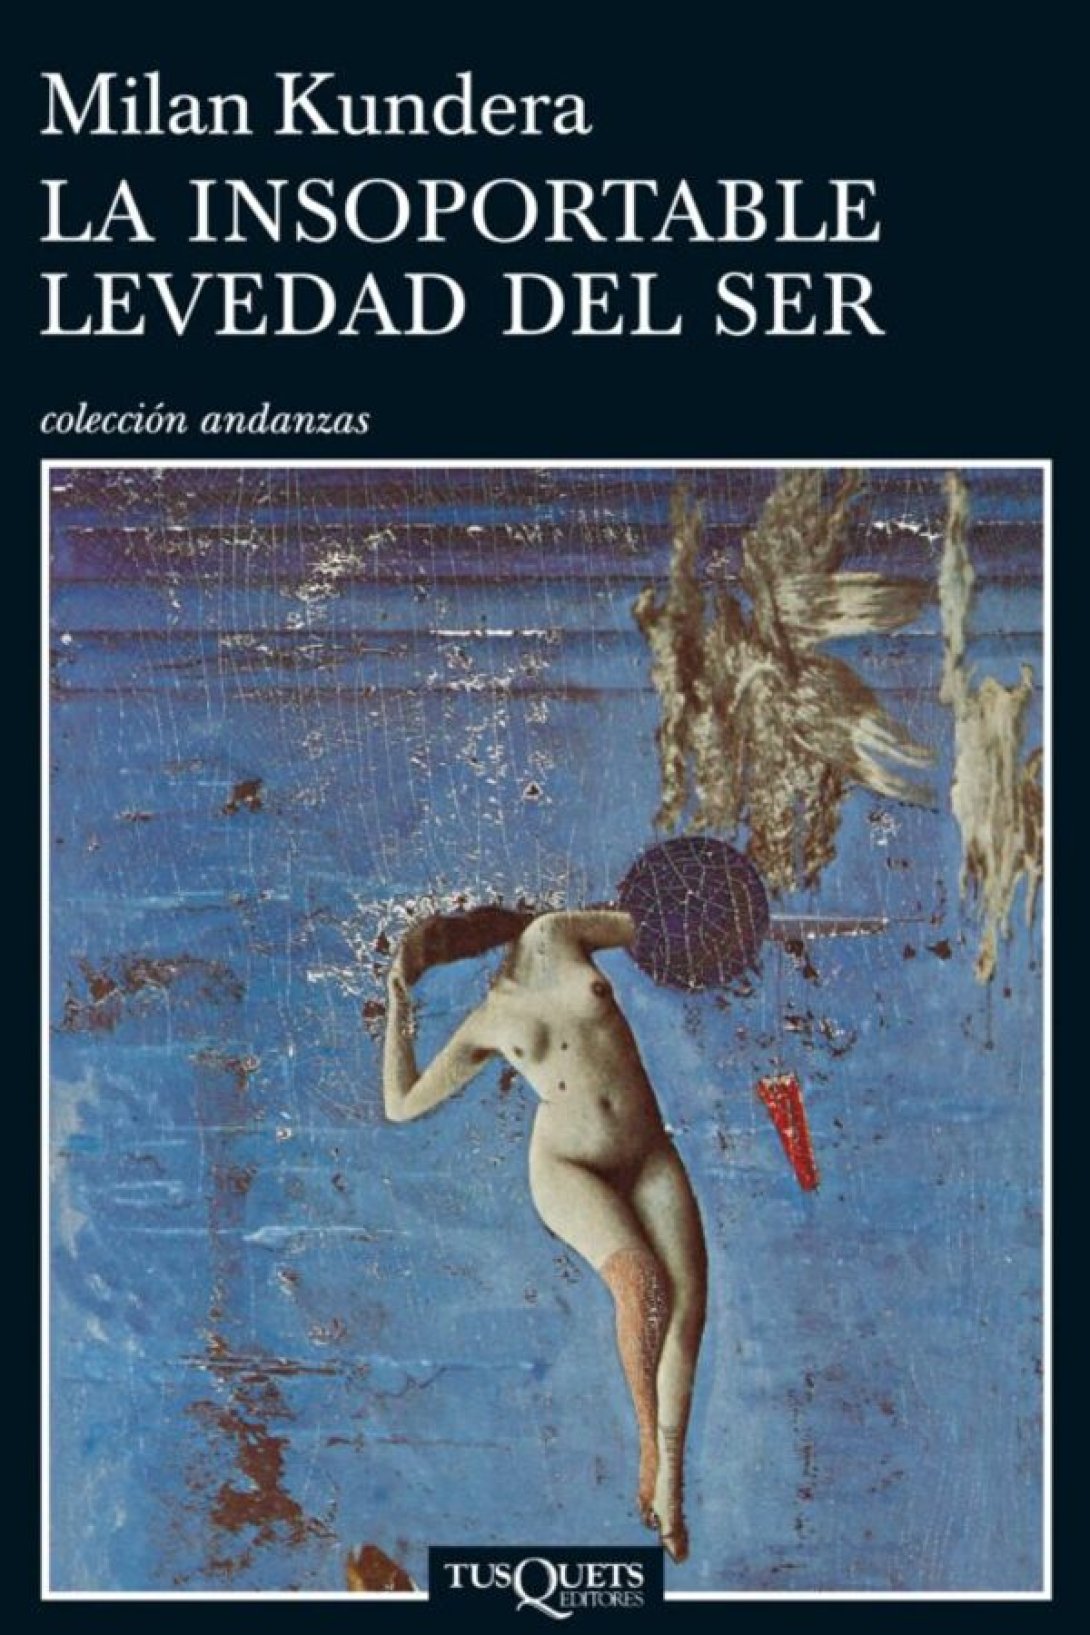 Portada de una edición española del libro La insoportable levedad del ser, de Milan Kundera. 